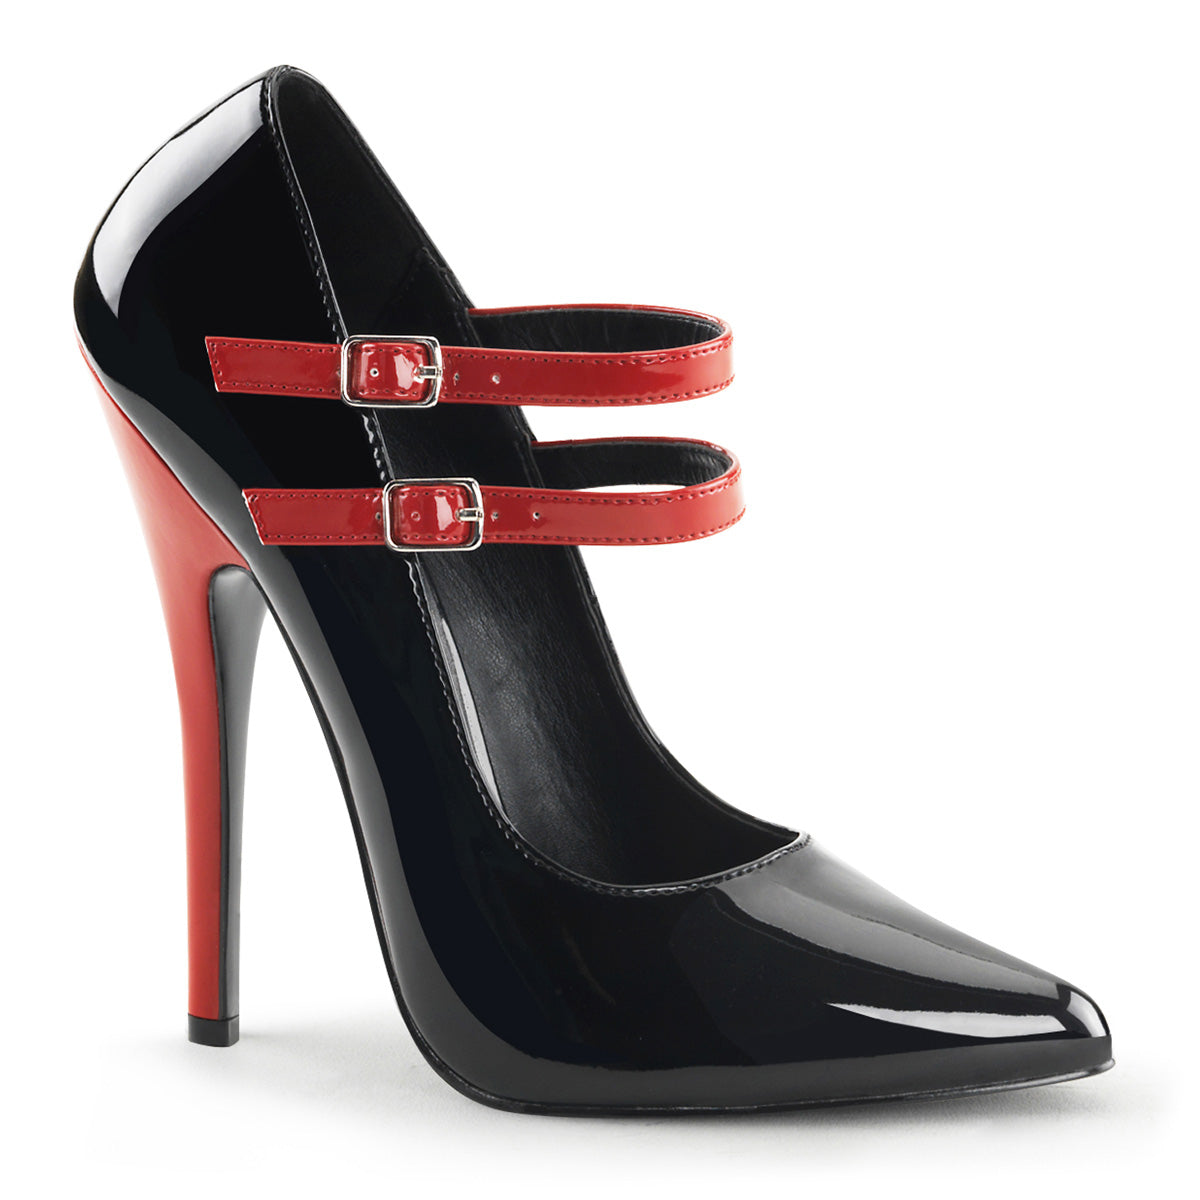 Domina-442 Pantofi de fetișuri devioși 6 "Heel Pantofi negri și roșii – Pole Dancing Shoes Ltd